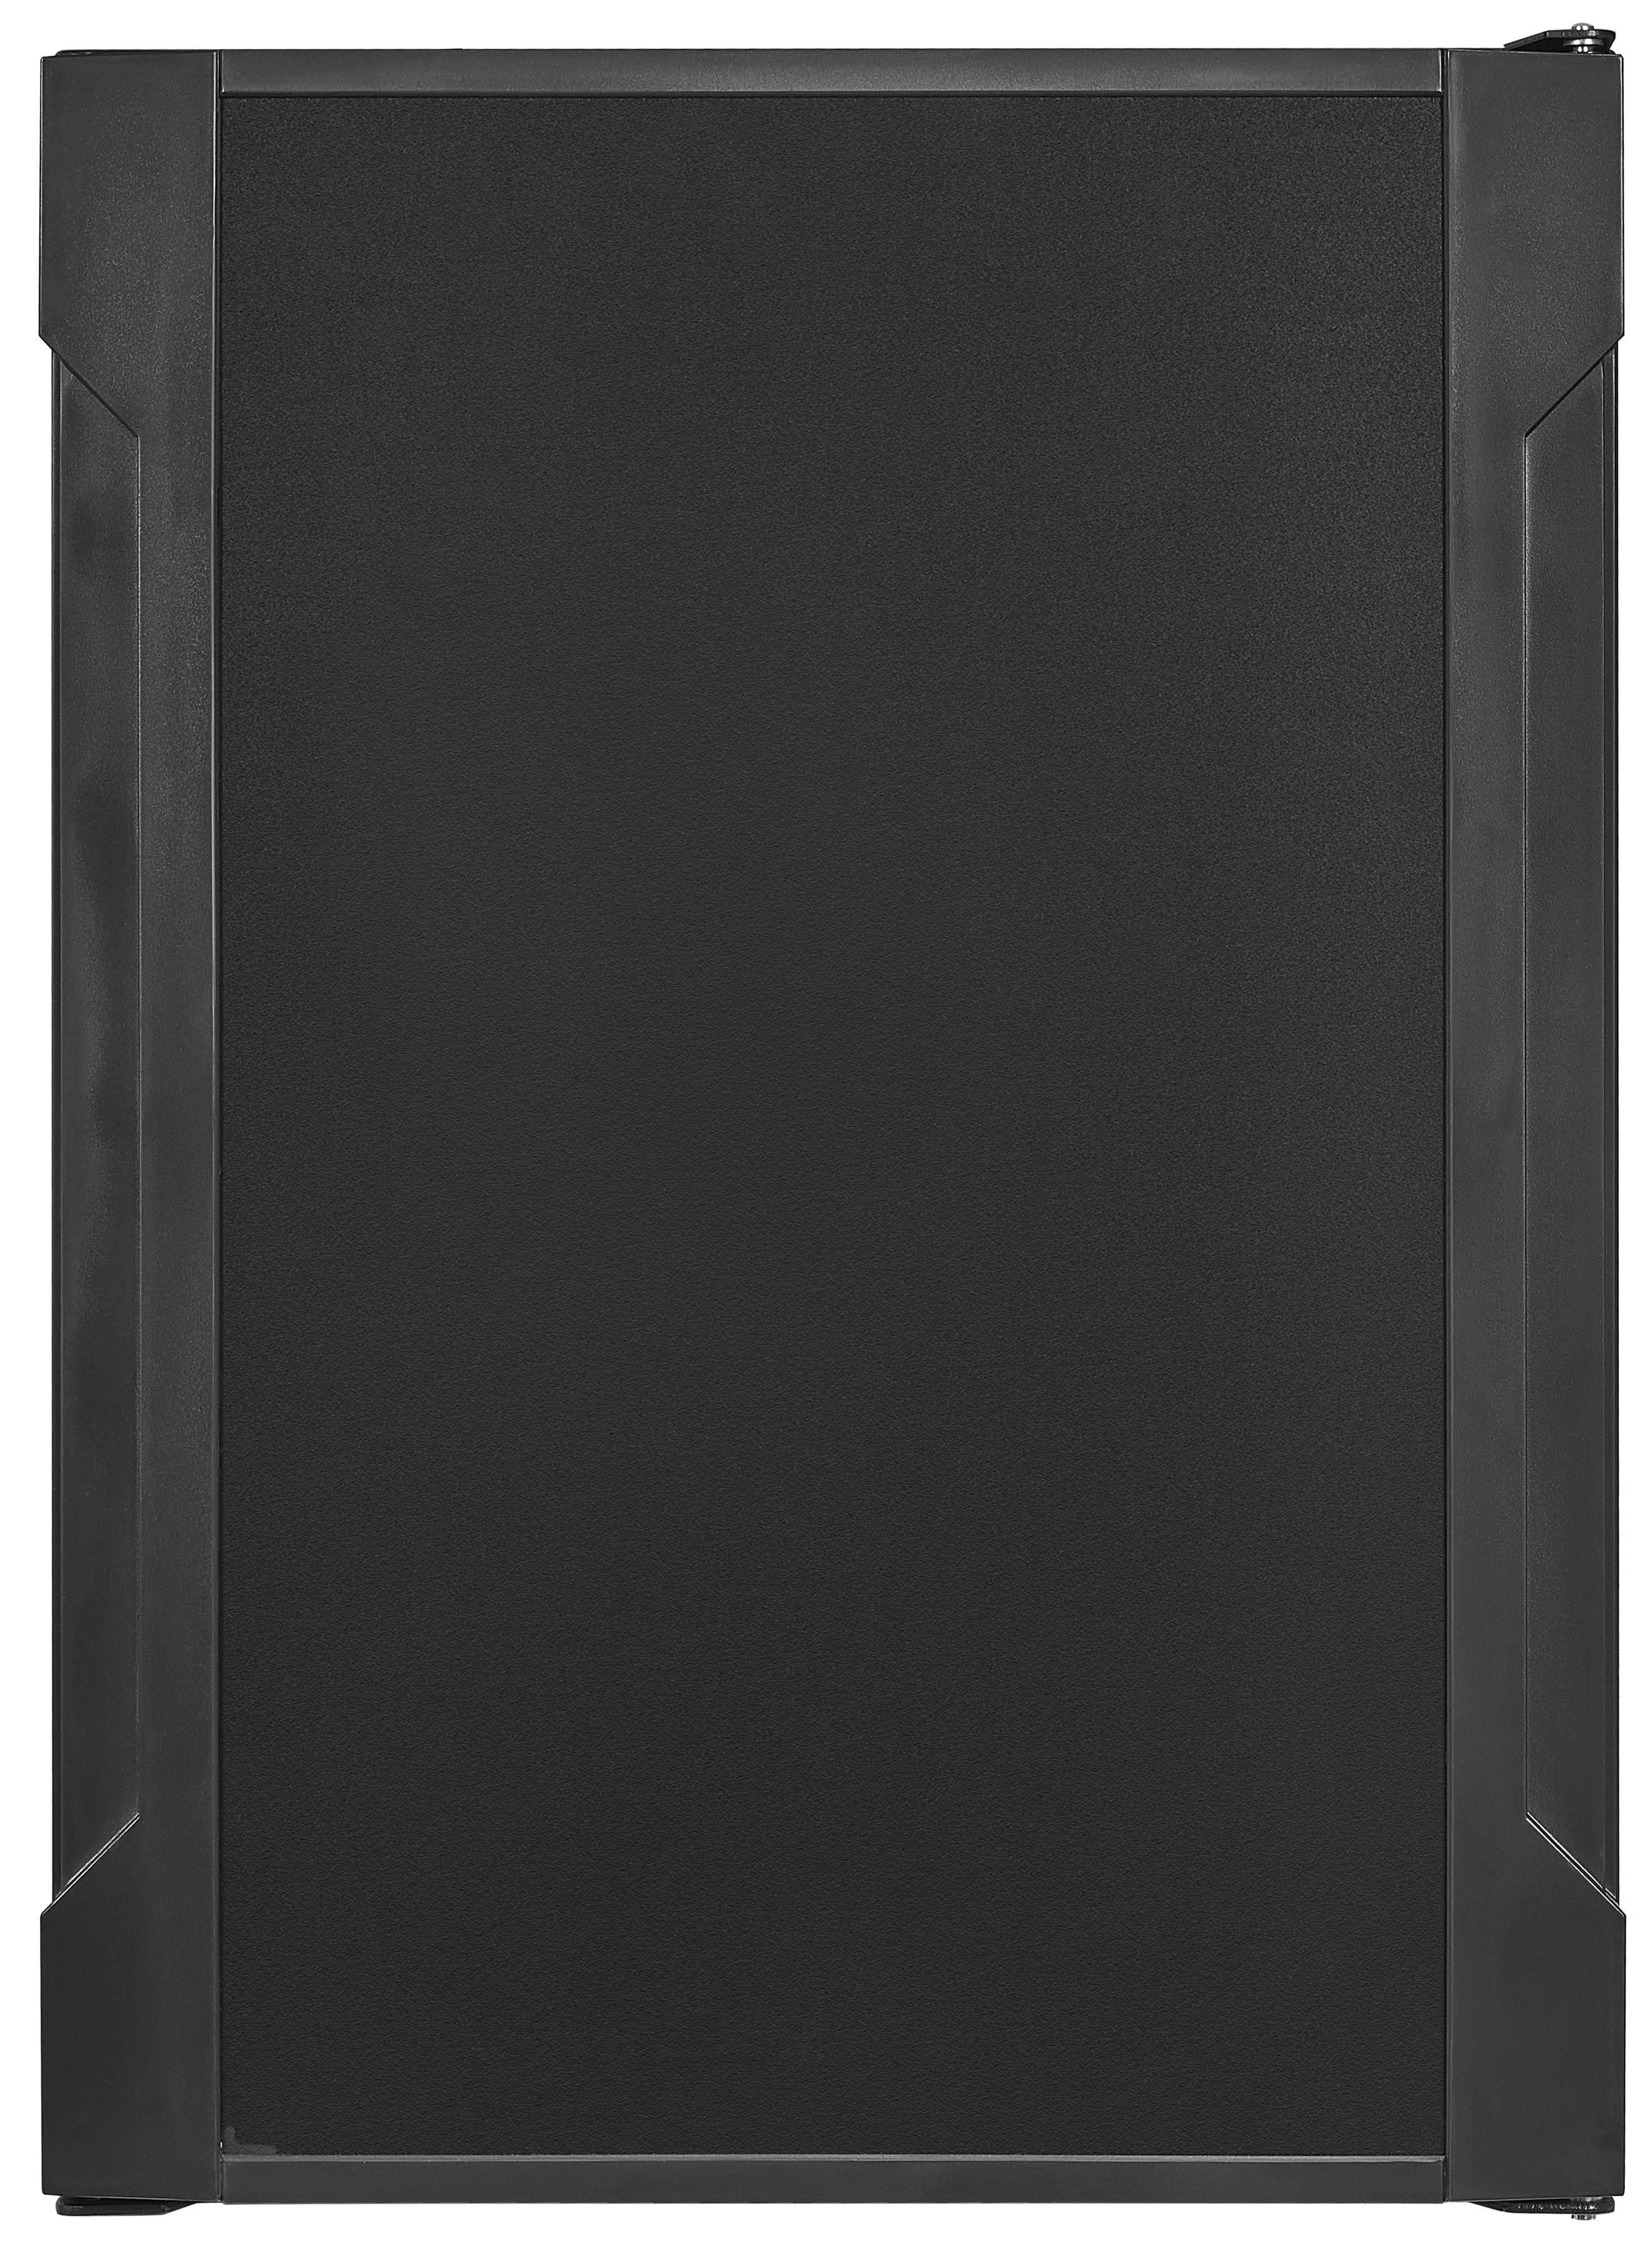 EXQUISIT mm Kühlschrank schwarzPV FA40-270G Schwarz) (G, 560 hoch,